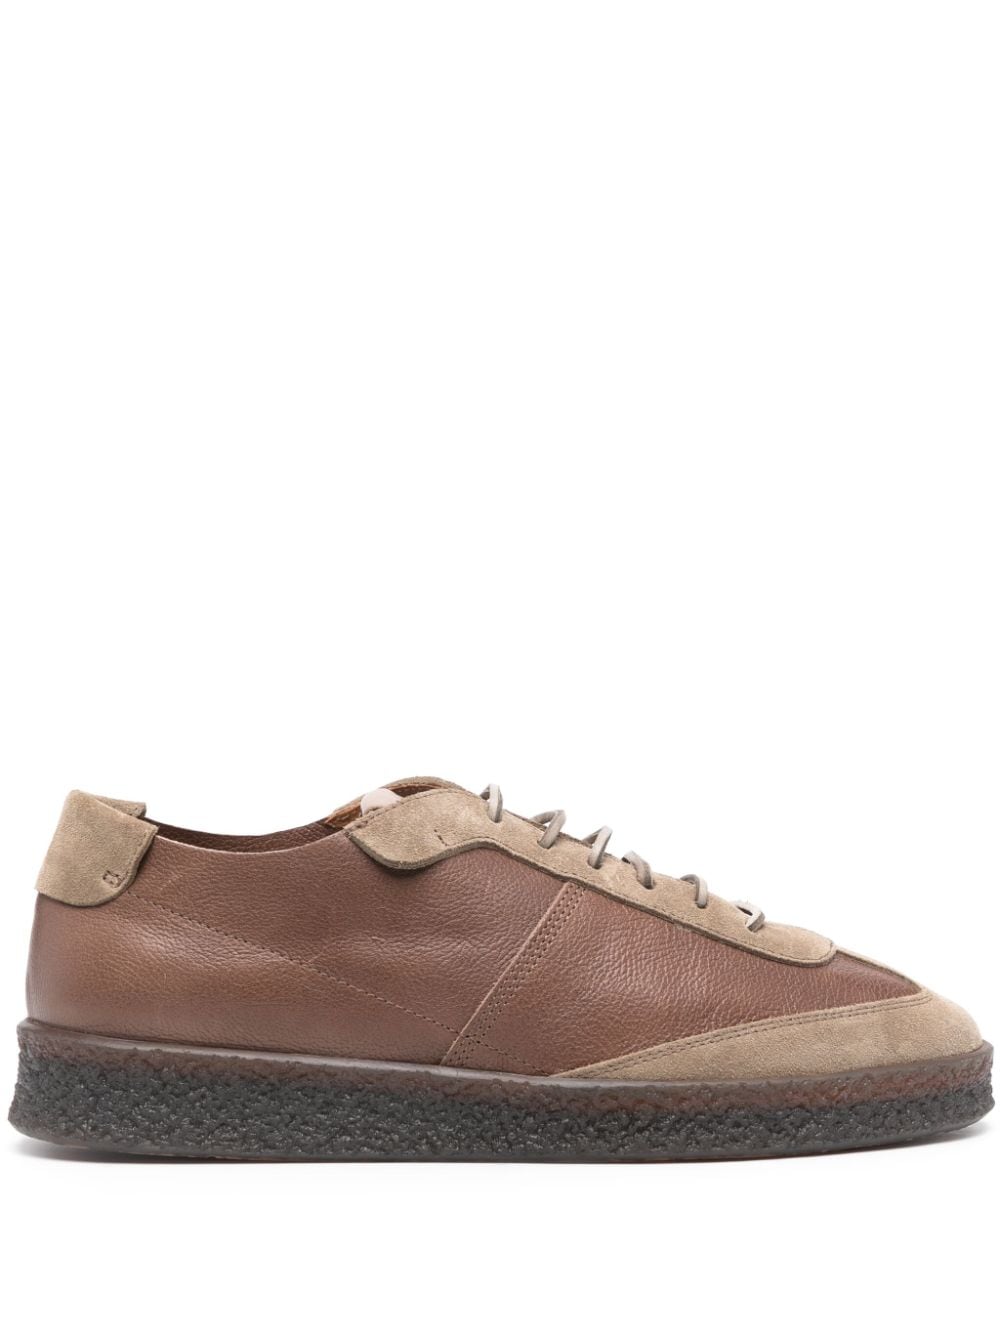 Buttero Crespo leather sneakers - Brown von Buttero